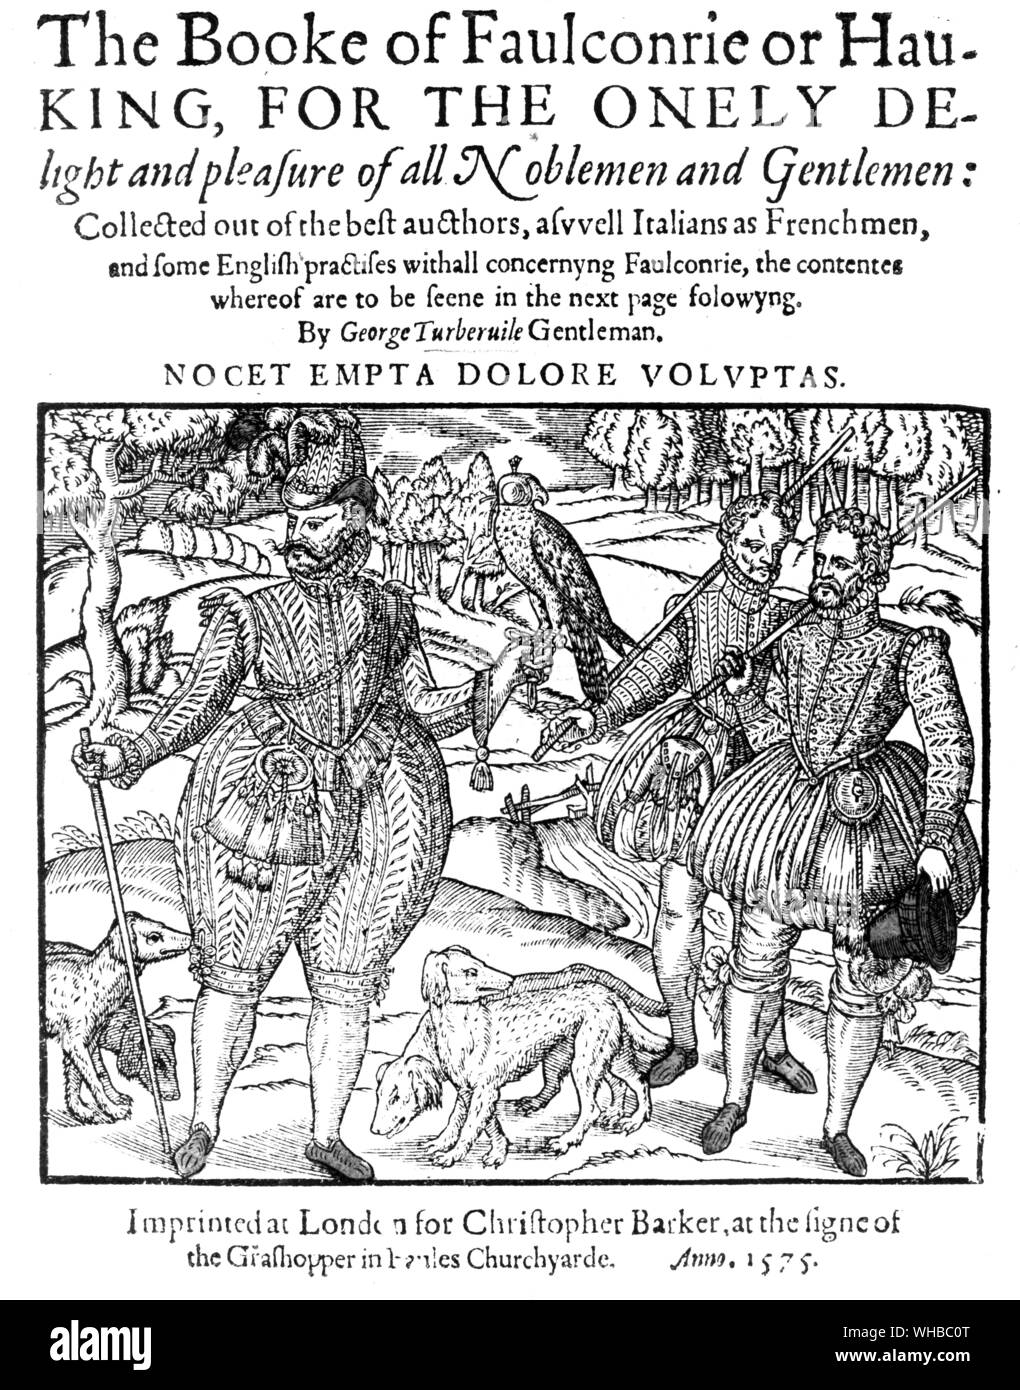 Dal Booke di Falconrie . George Tuberville ha pubblicato la prima edizione del suo libro nel regno della regina Elisabetta, 1575 . . Foto Stock